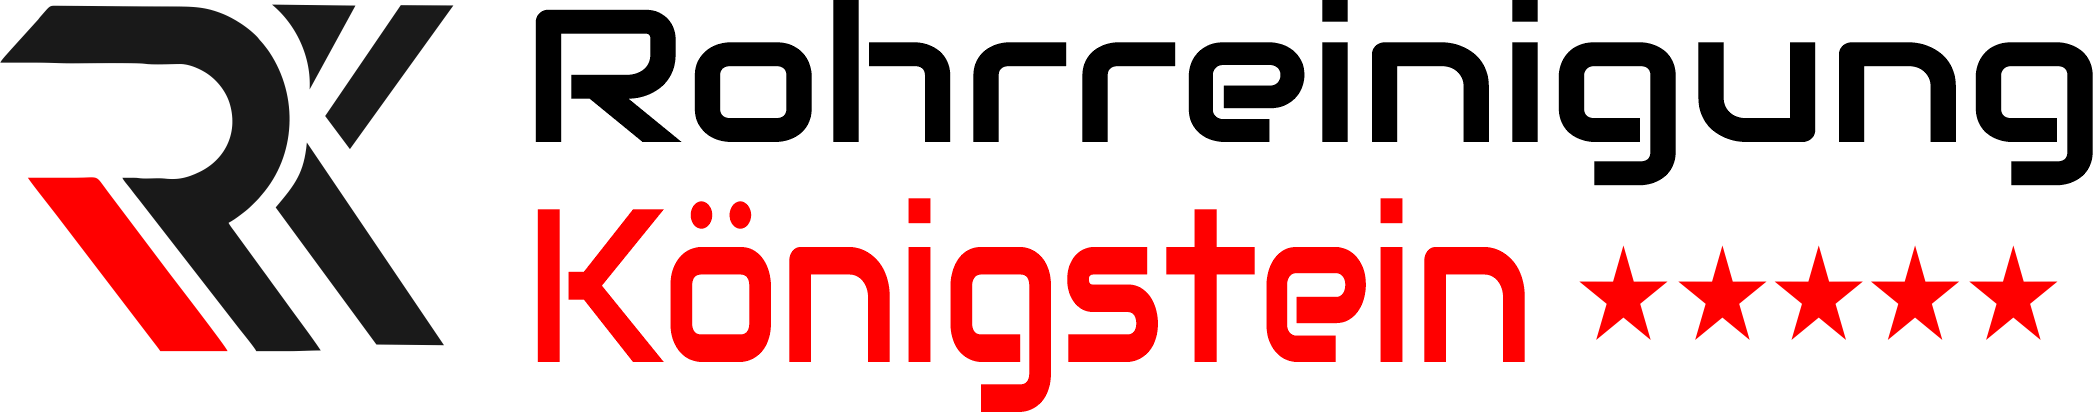 Rohrreinigung Königstein Logo